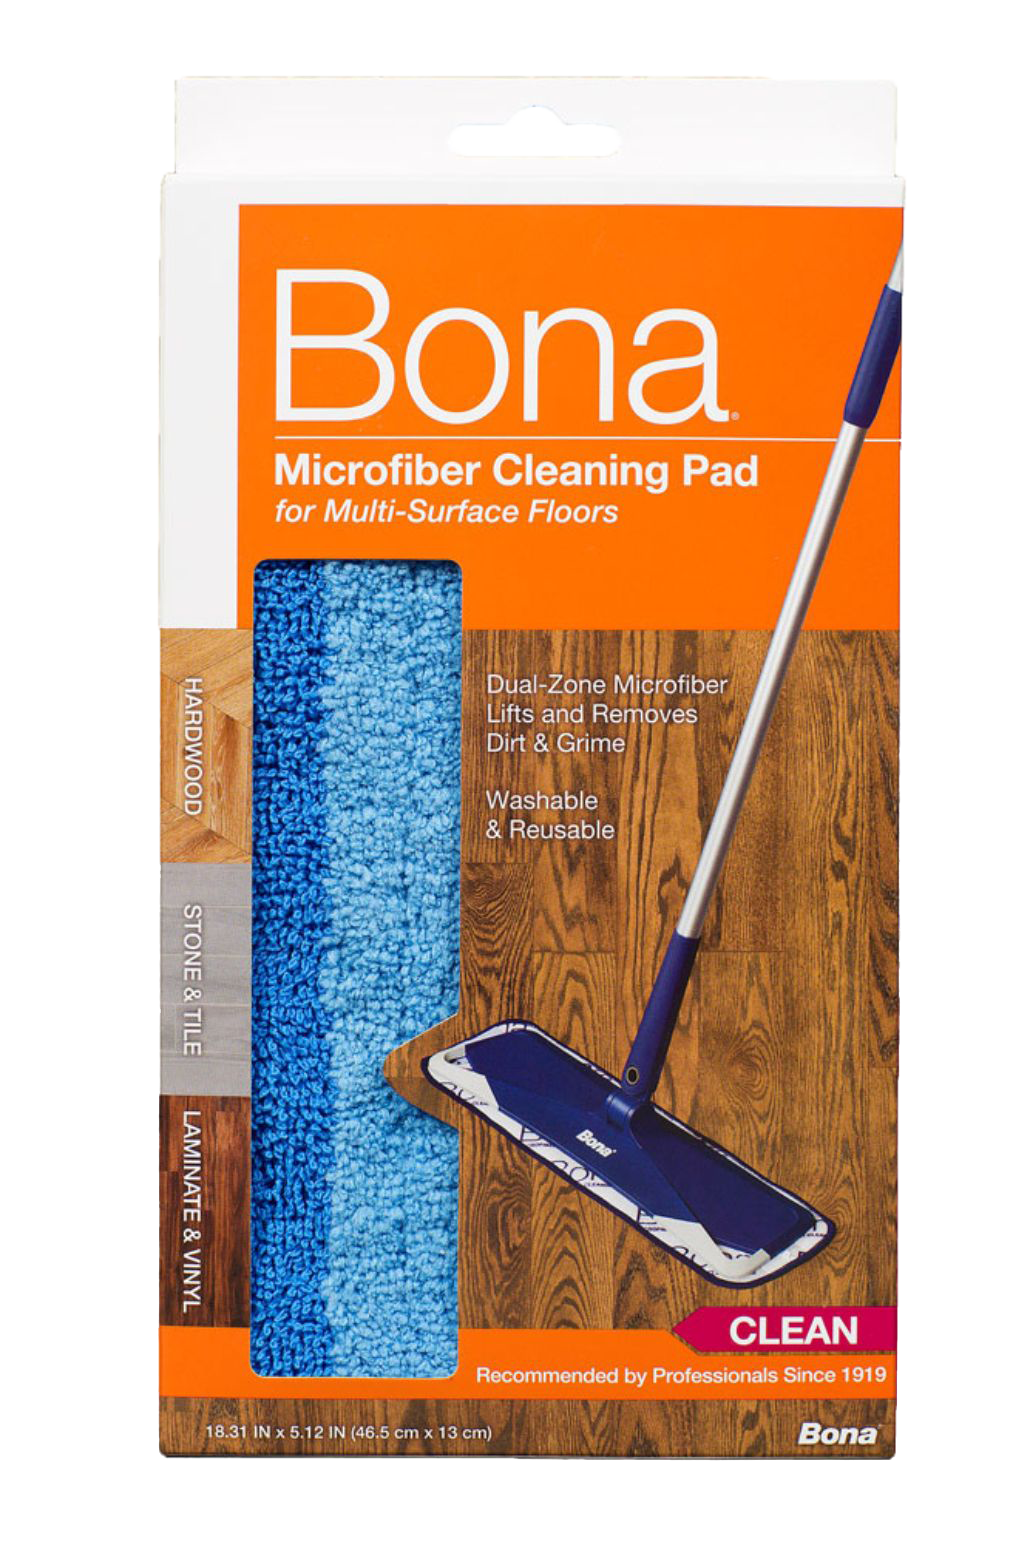 Bona Microfiber Cleaning Pad Us, Bona Hardwood Floor Wipes